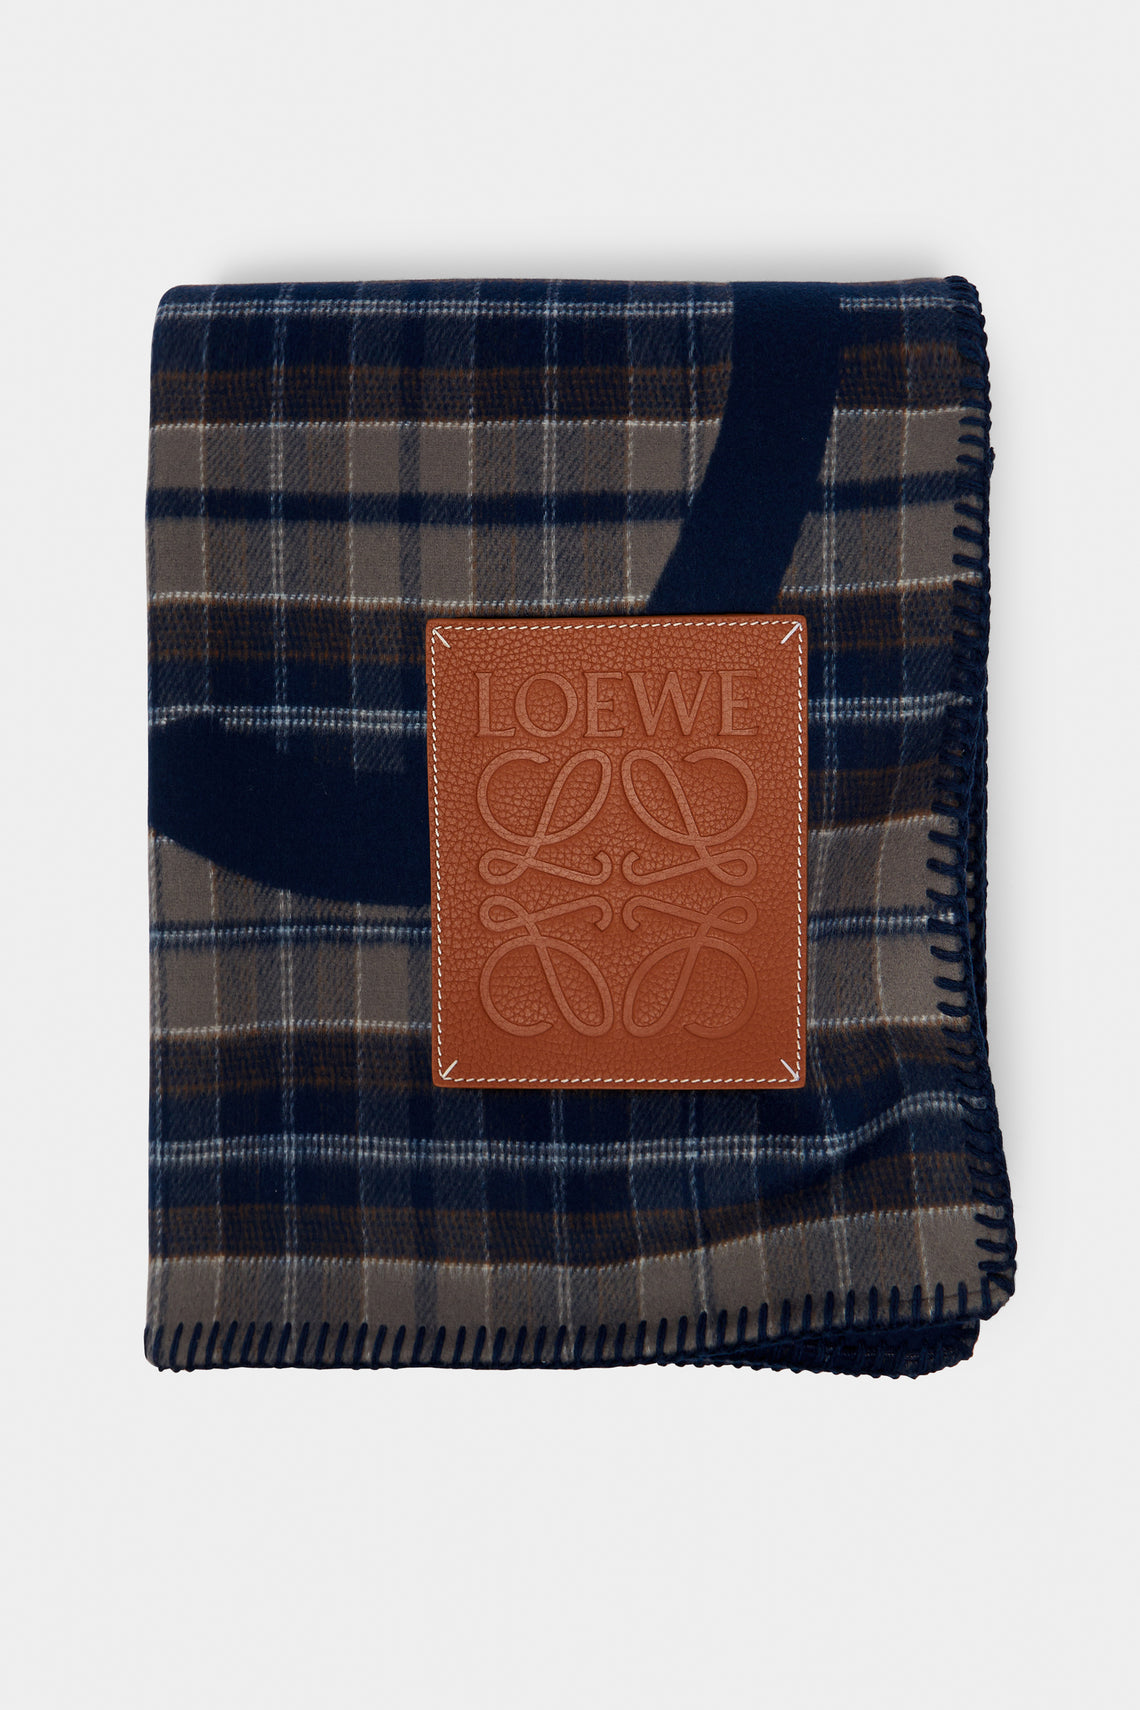 Loewe Home - Mohair Check Blanket - Multiple - ABASK - 